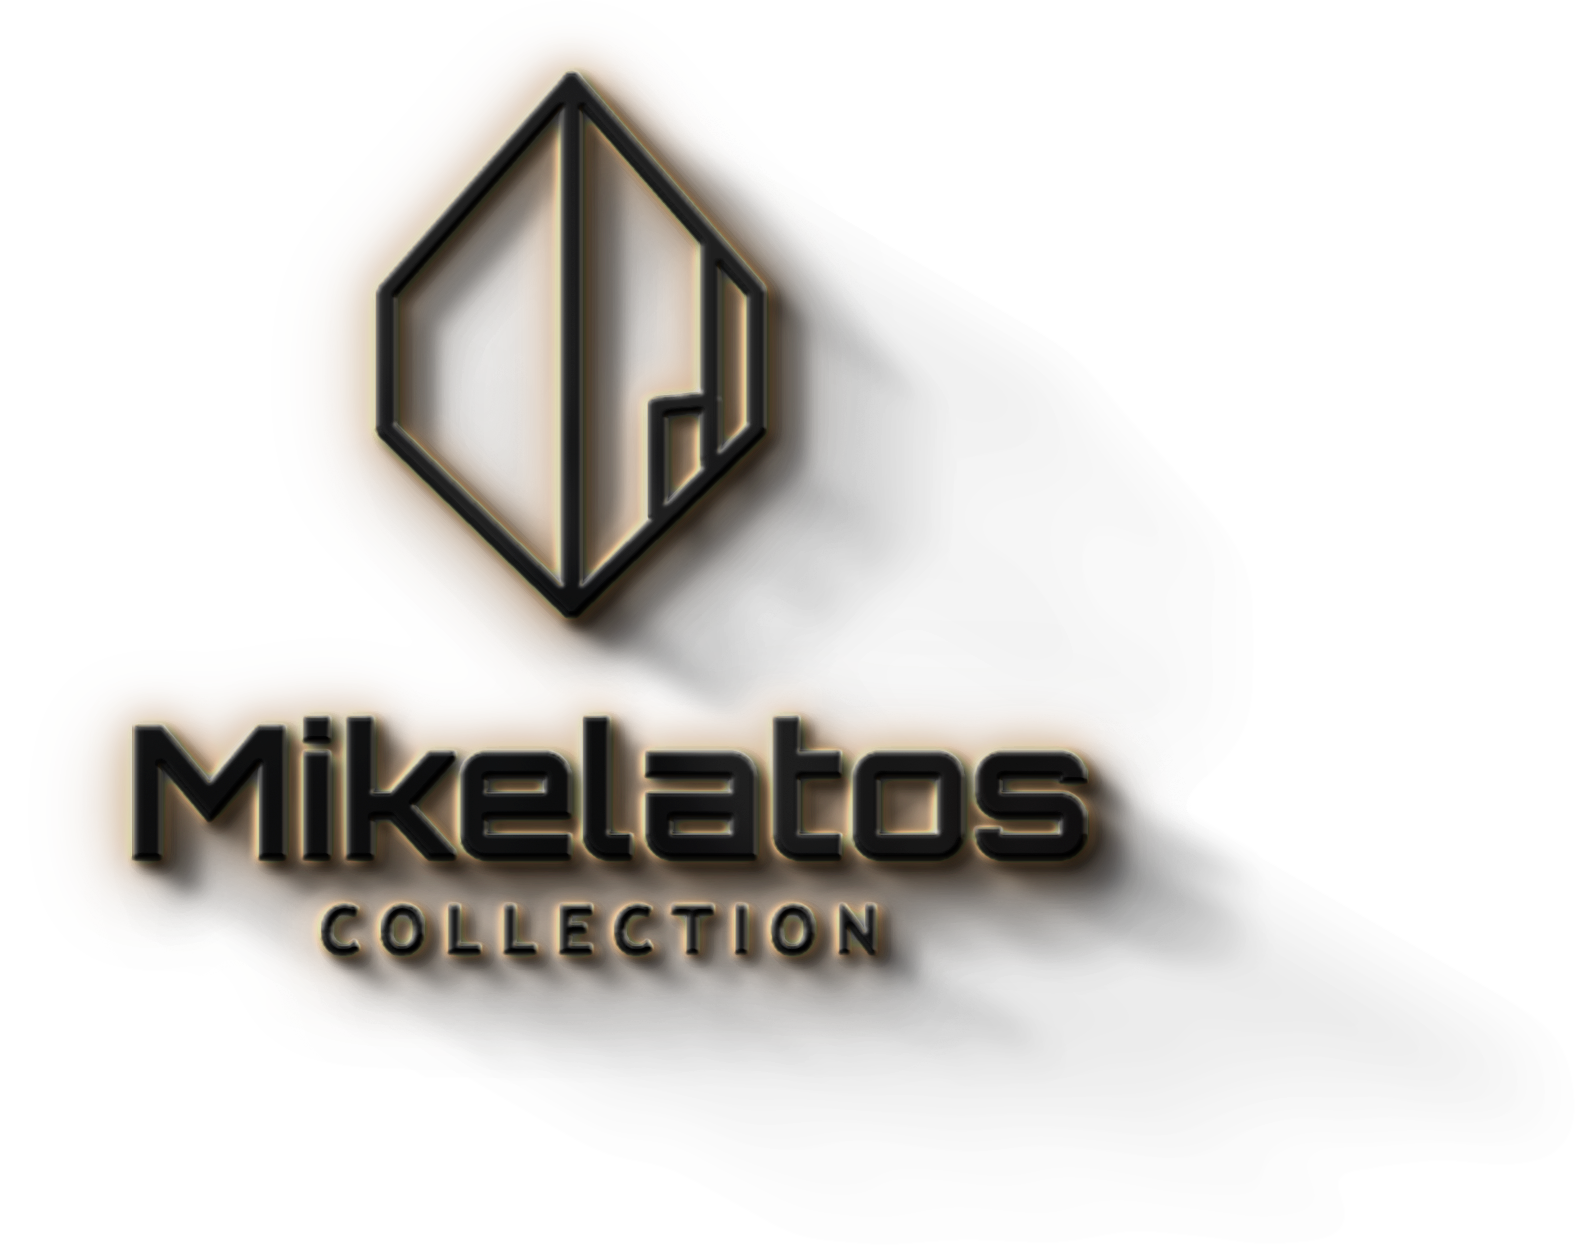 Mikelatos Collection, Vacation Rentals Skala Kefalonia, Kefalonia Villas, Kefalonia Apartments, Kefalonia Studios, Kefalonia Holiday Homes